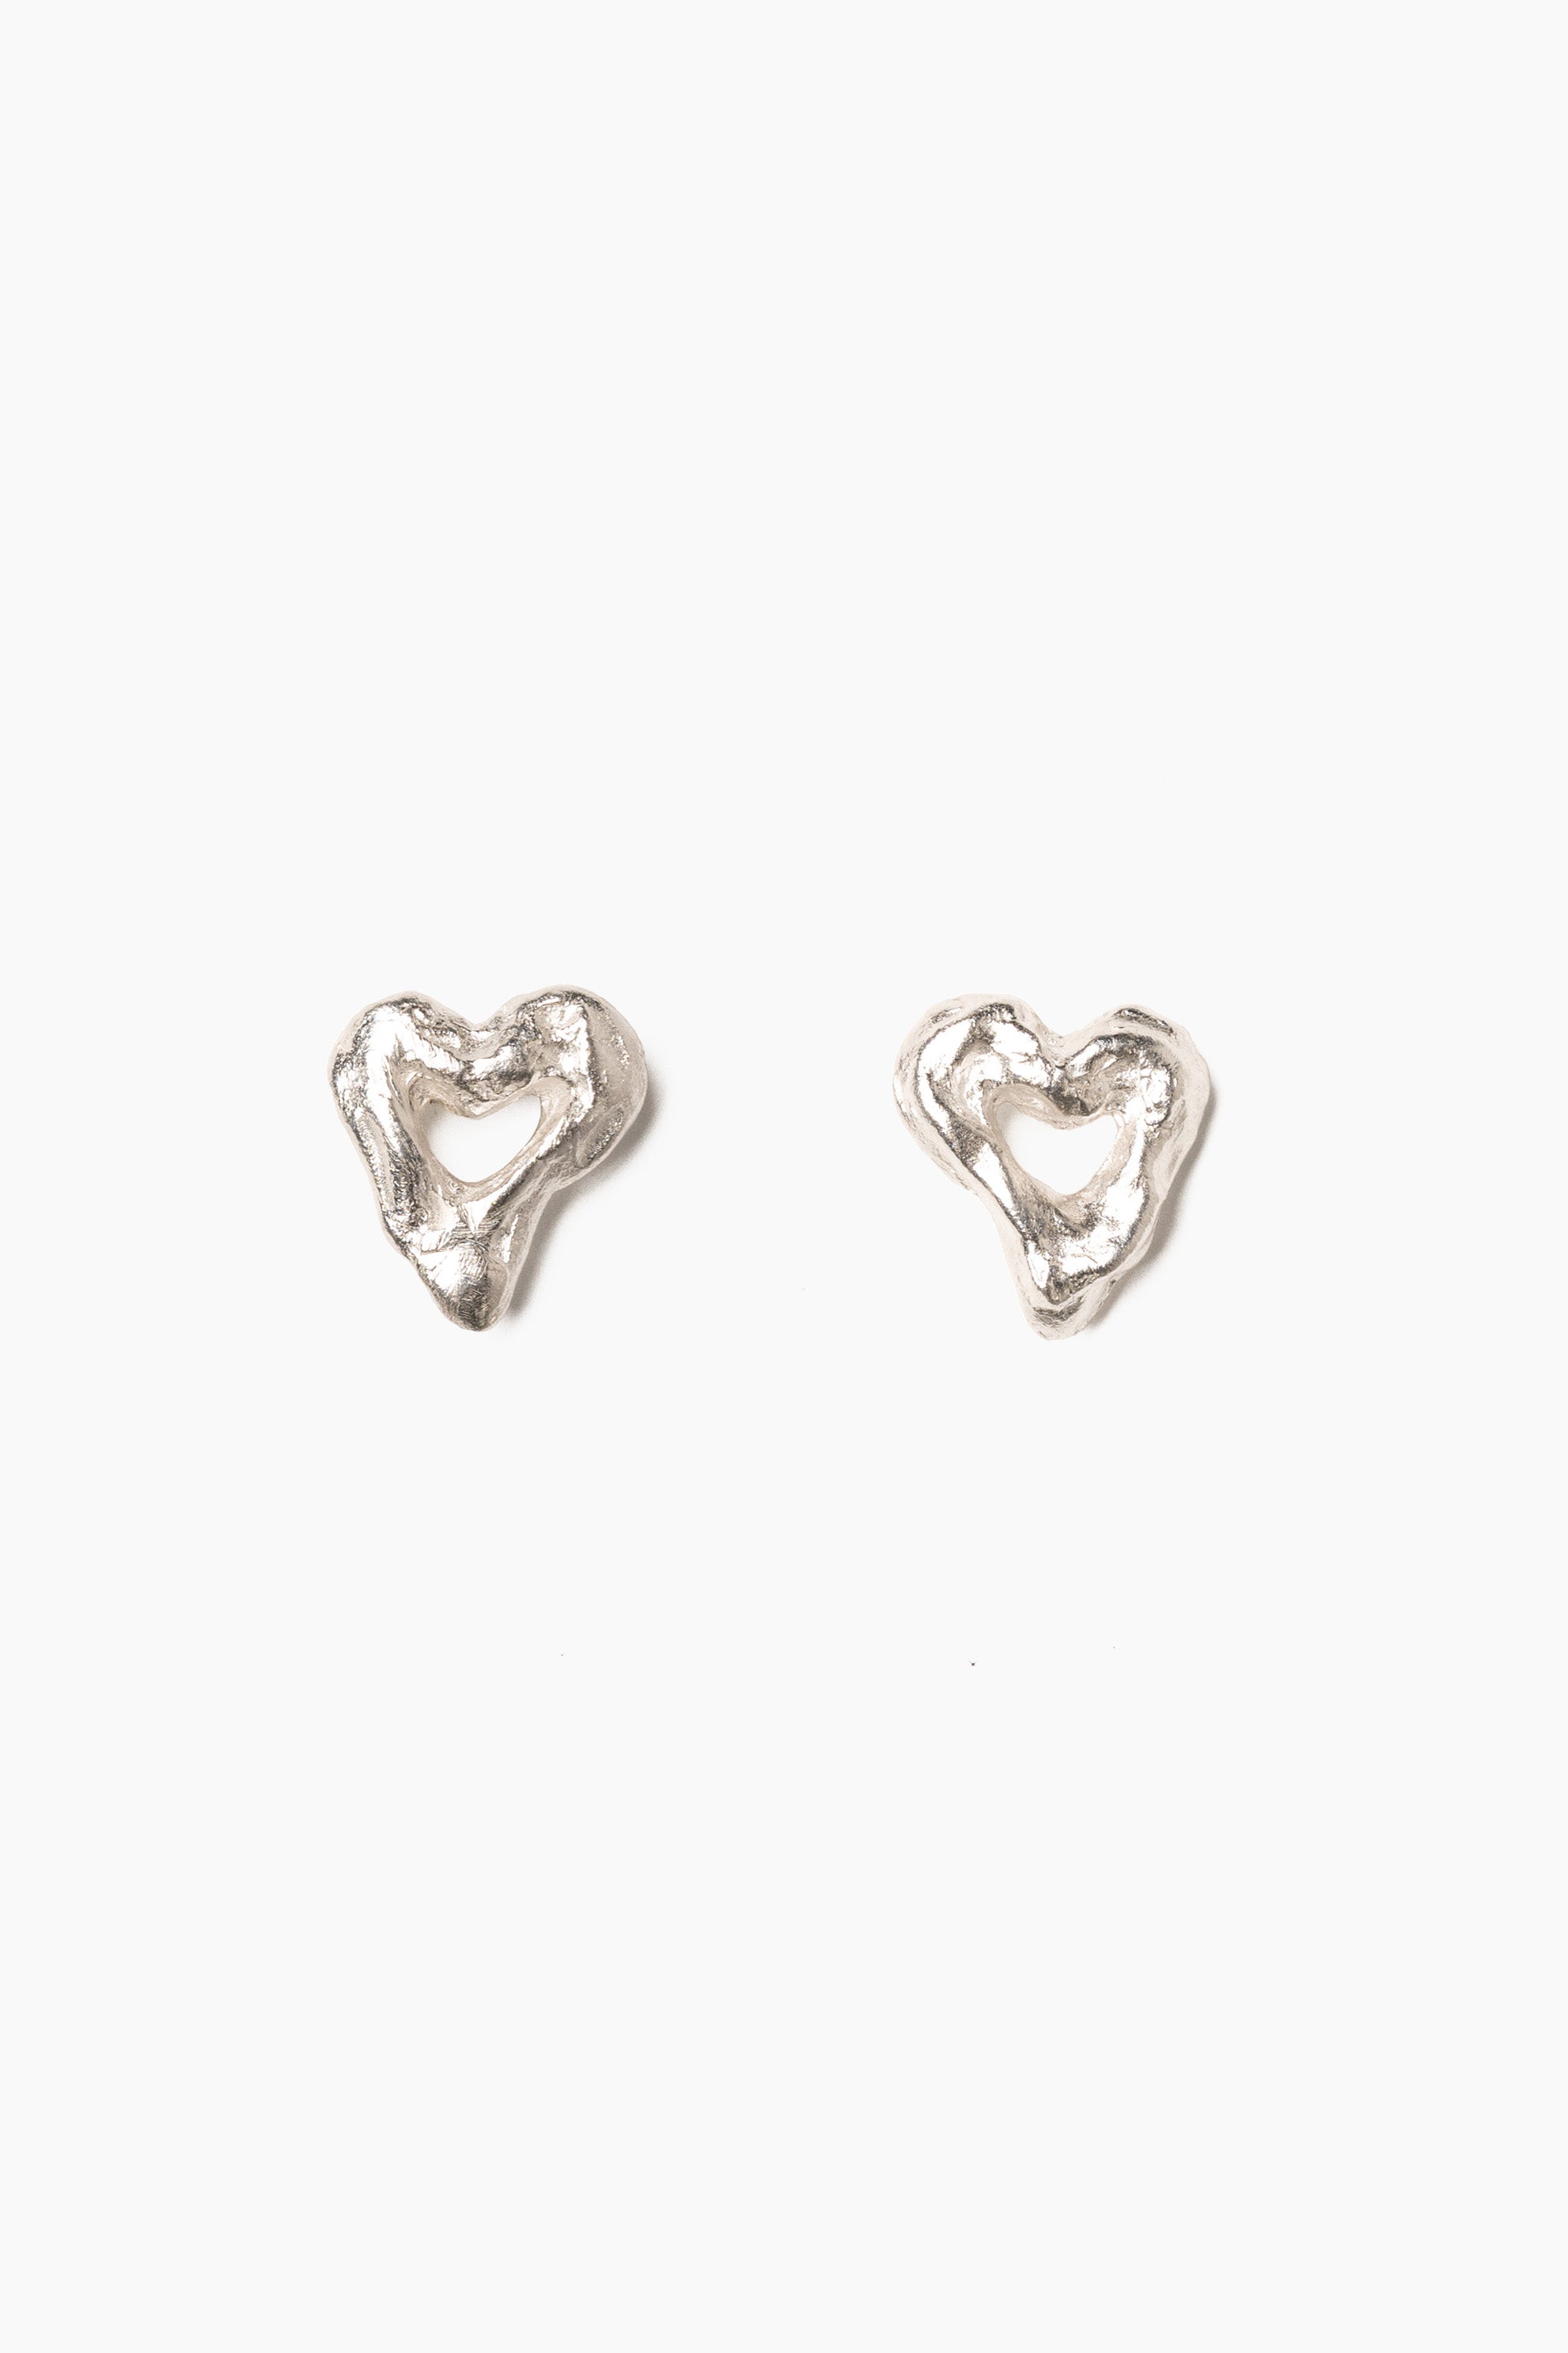 Small Heart Earrings | By Western Hands